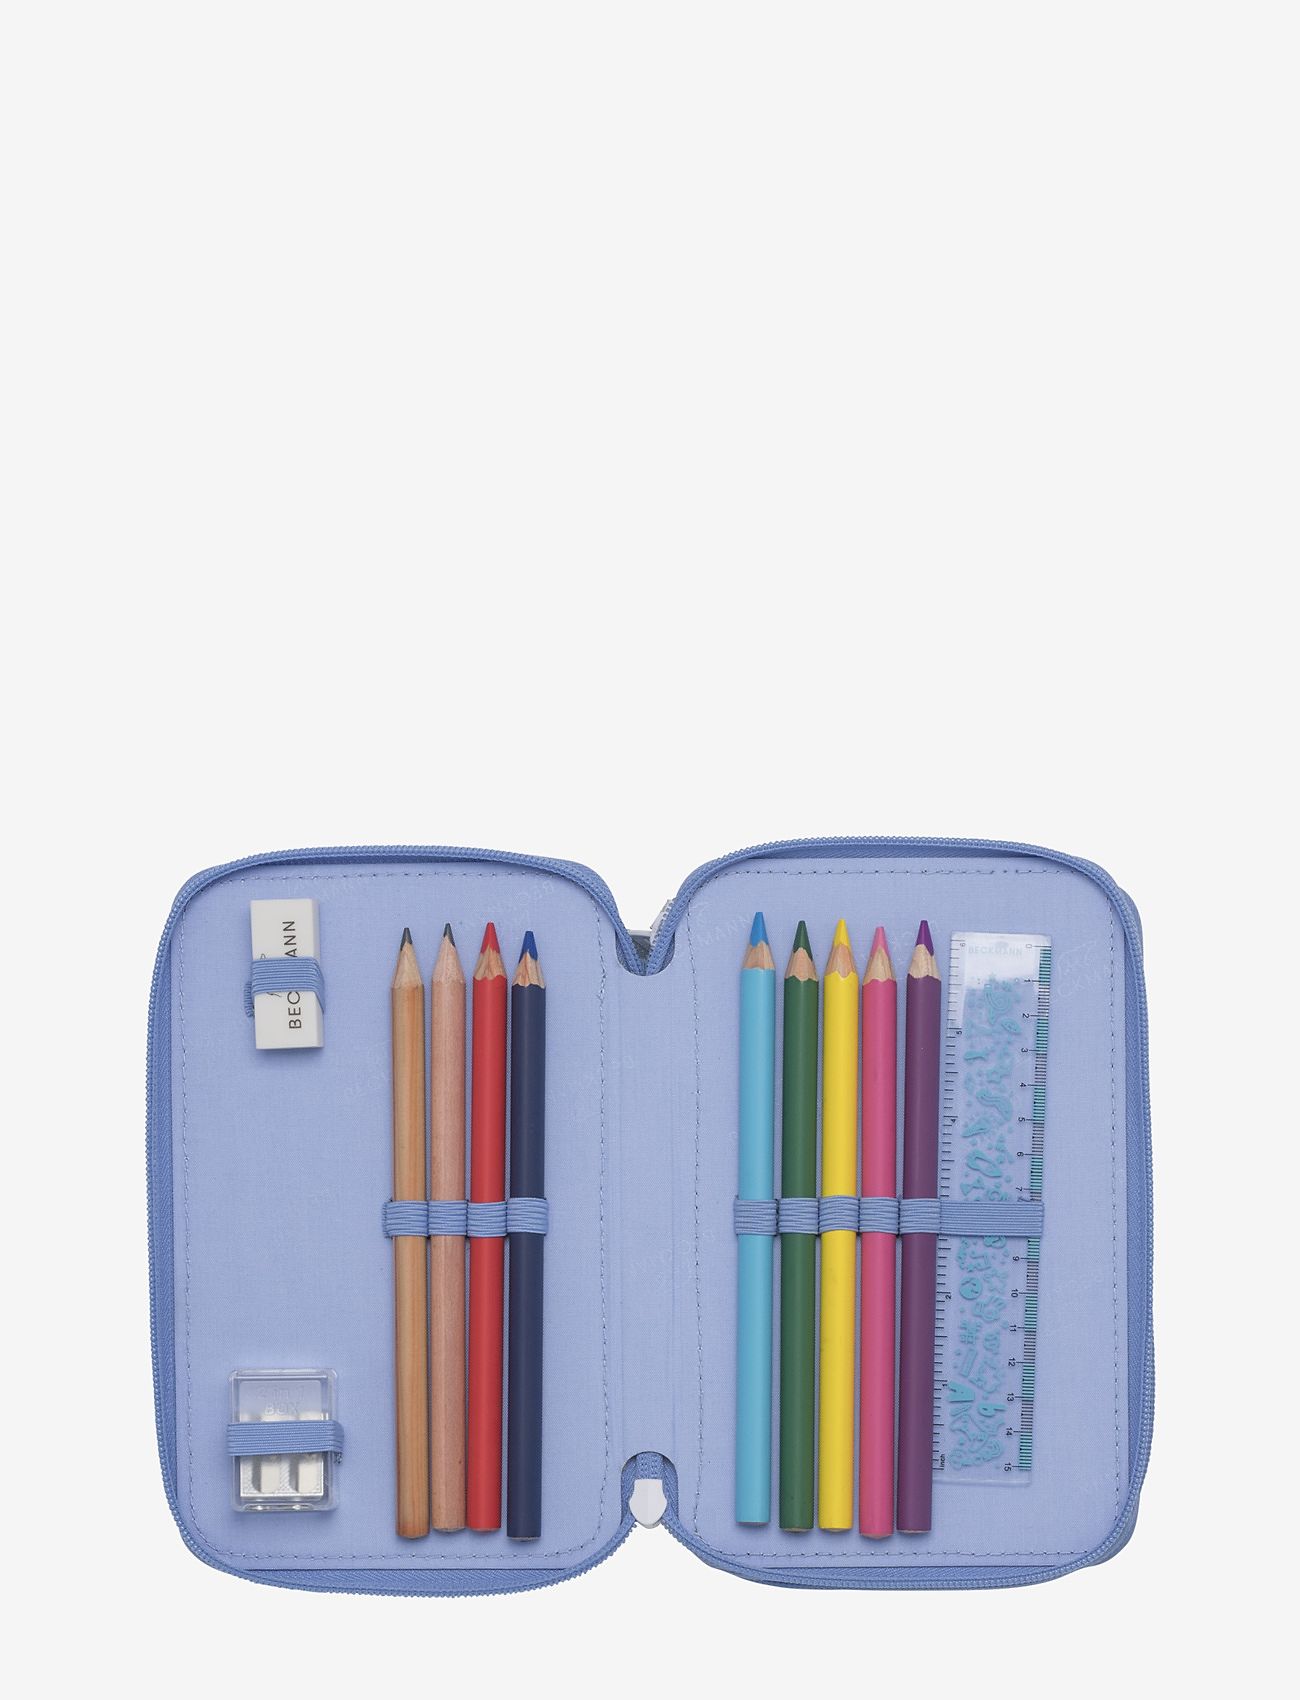 Beckmann of Norway - Three section pencil case w/content - Unicorn Princess Ice B - Étuis à crayons - unicorn princess ice blue - 1